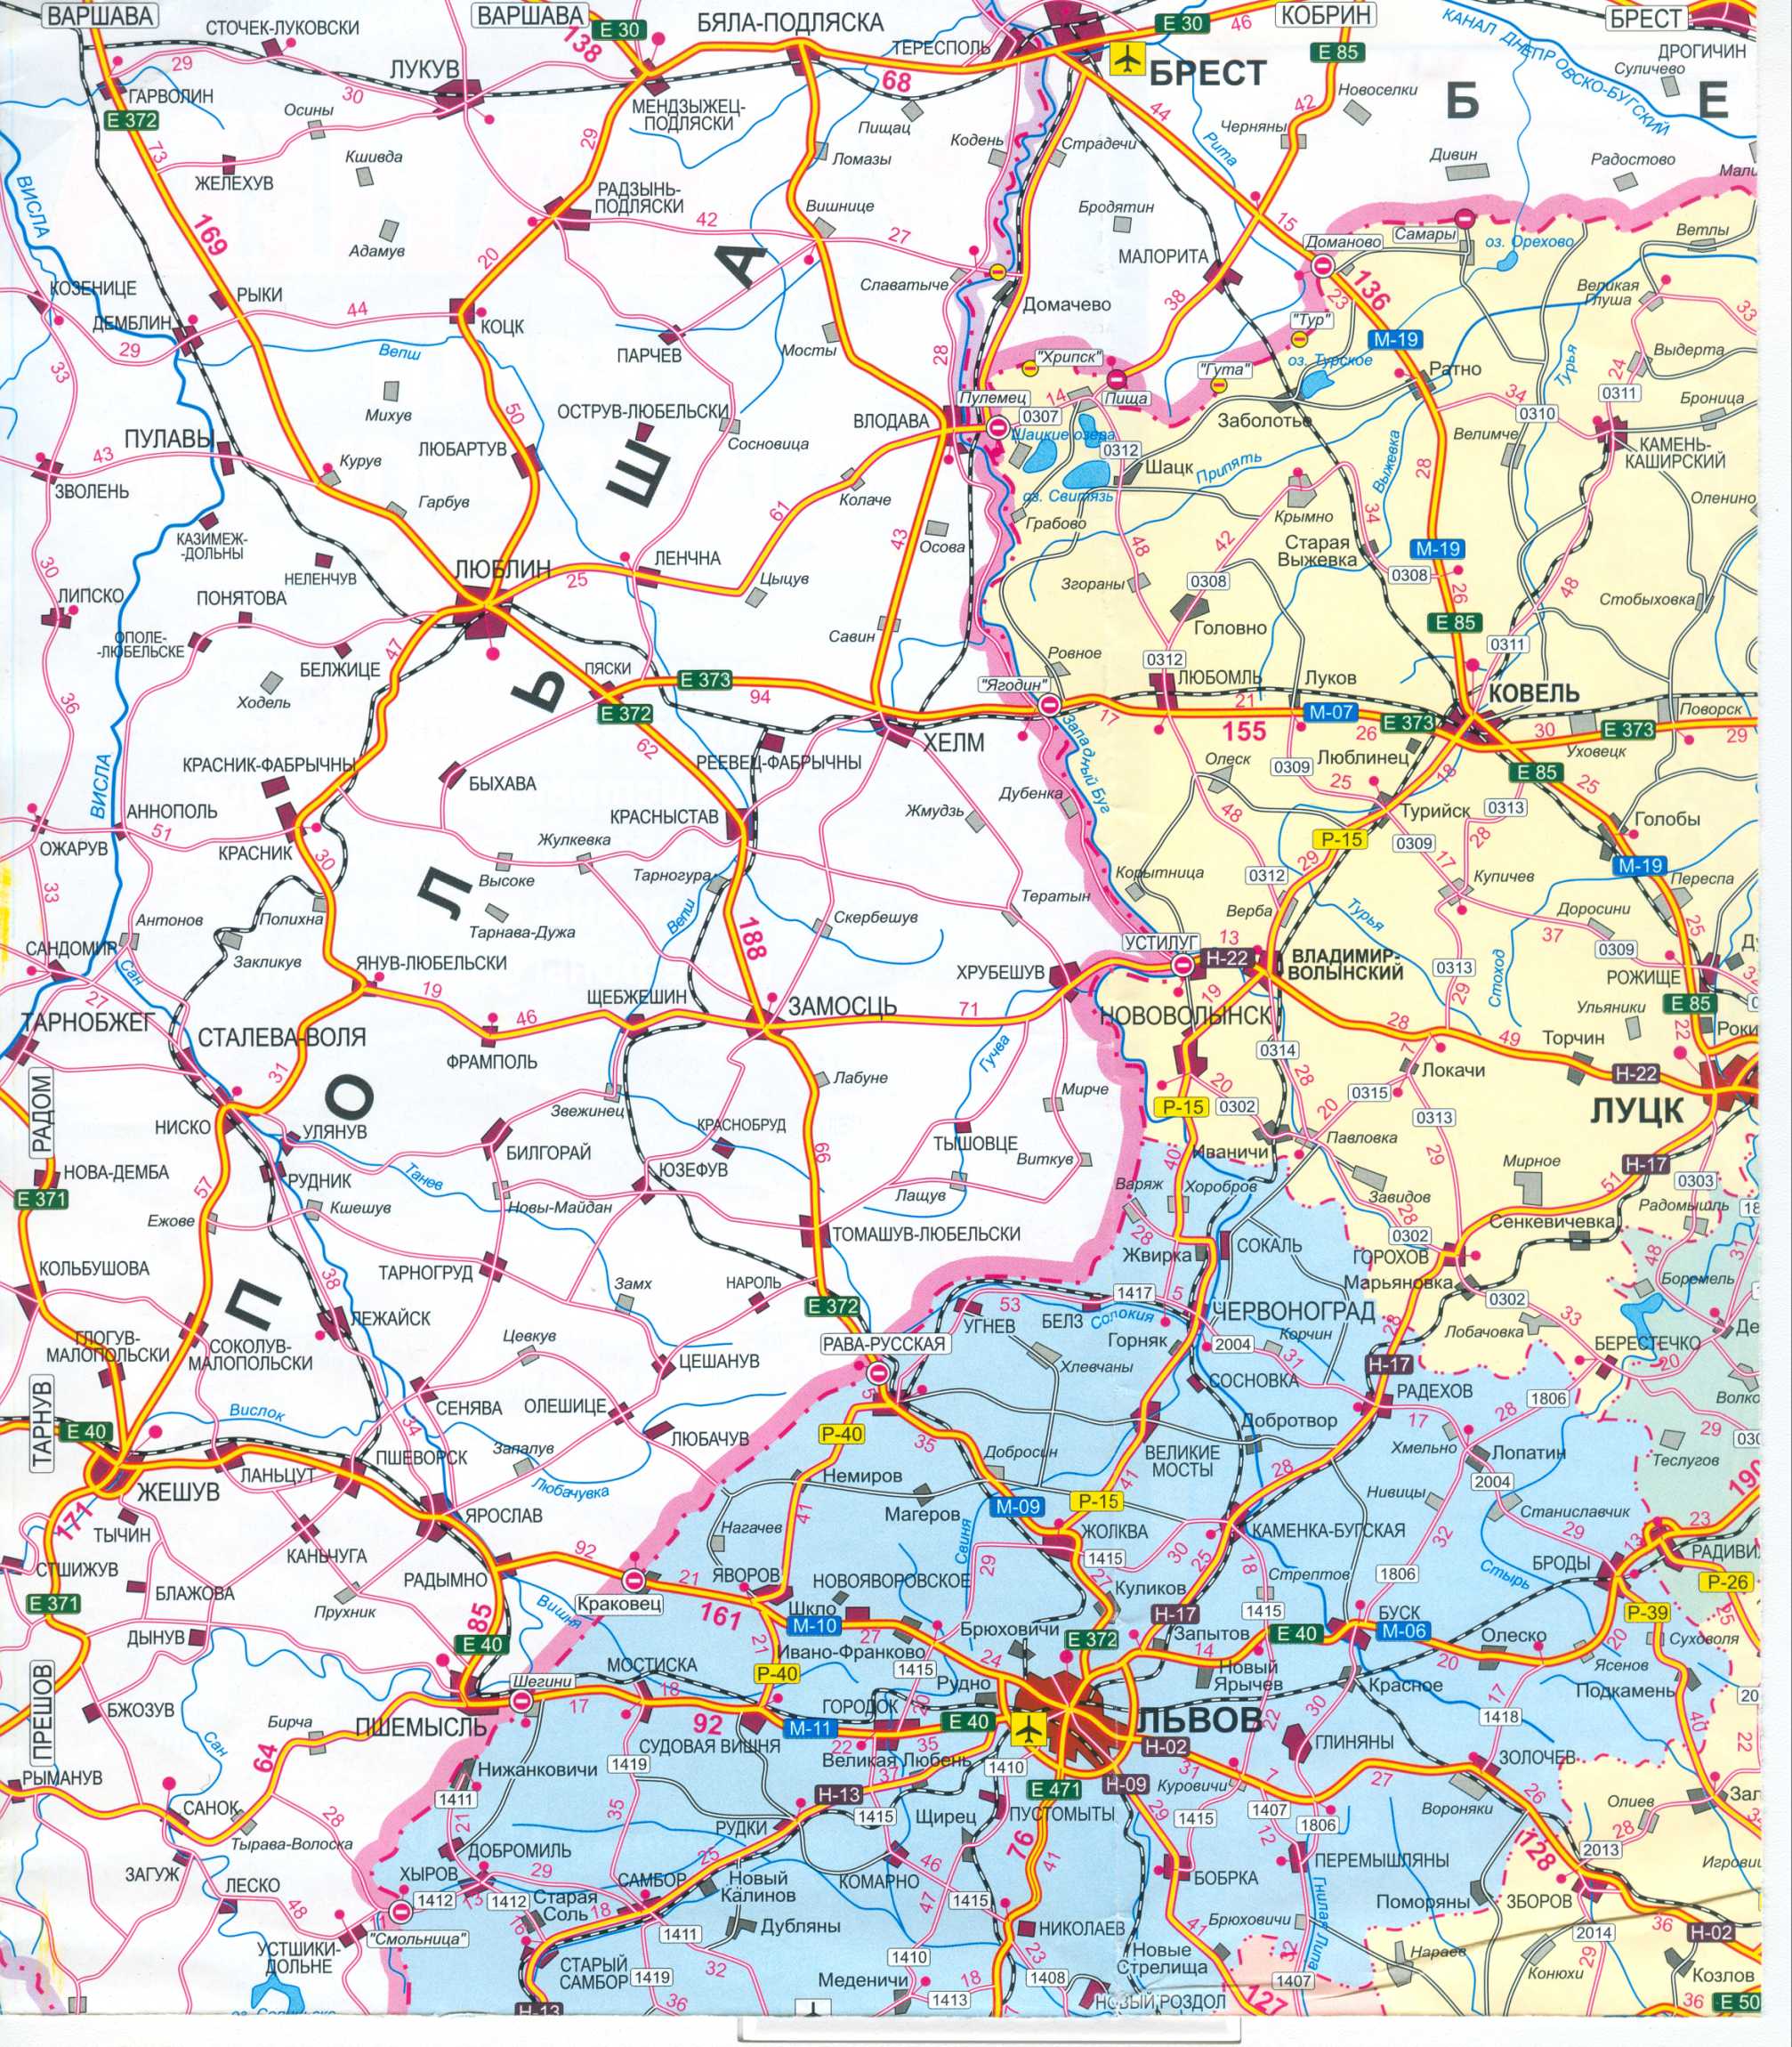 Karte der Ukraine frei. Road Map der Ukraine kostenlos herunterladen. Große Karte von Ukraine Straßen frei, A0